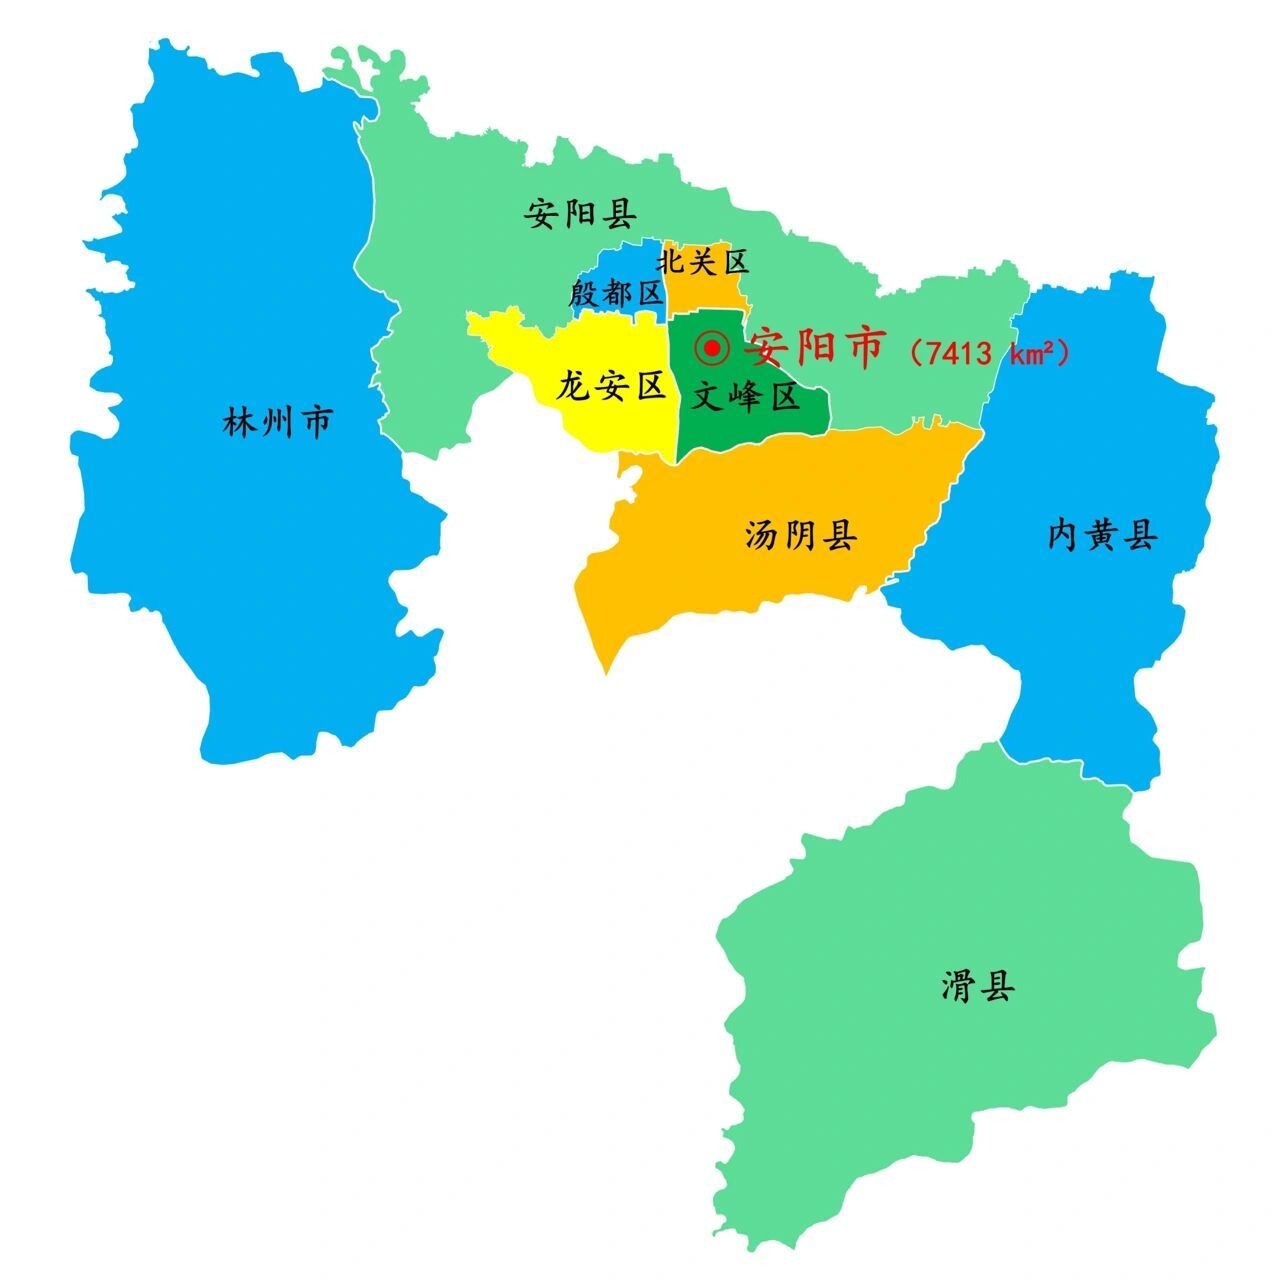 1个县级市:林州市 4个县:安阳县,滑县,内黄县,汤阴县 — 北关区: 1